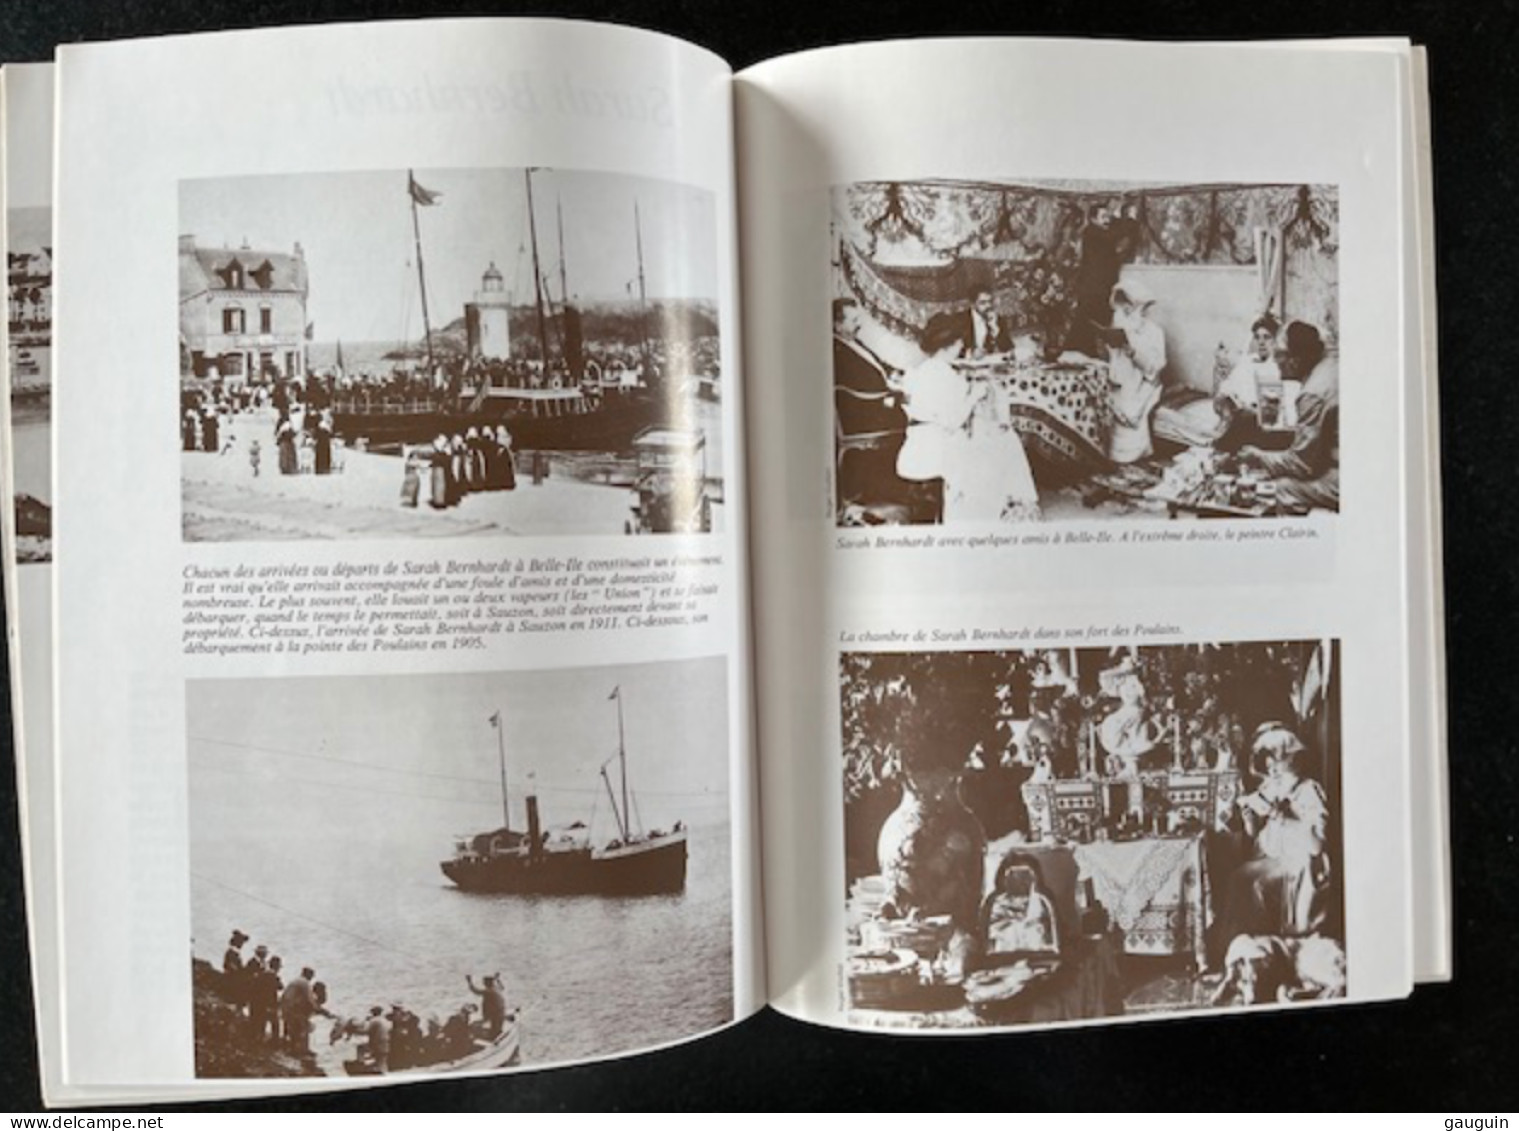 BELLE-ISLE-en-MER - "Images Du Passé" Repro. Cartes Postales Anciennes - Editions Lestrac - 78 Pages / 1977 §TOP RARE§ - Books & Catalogs